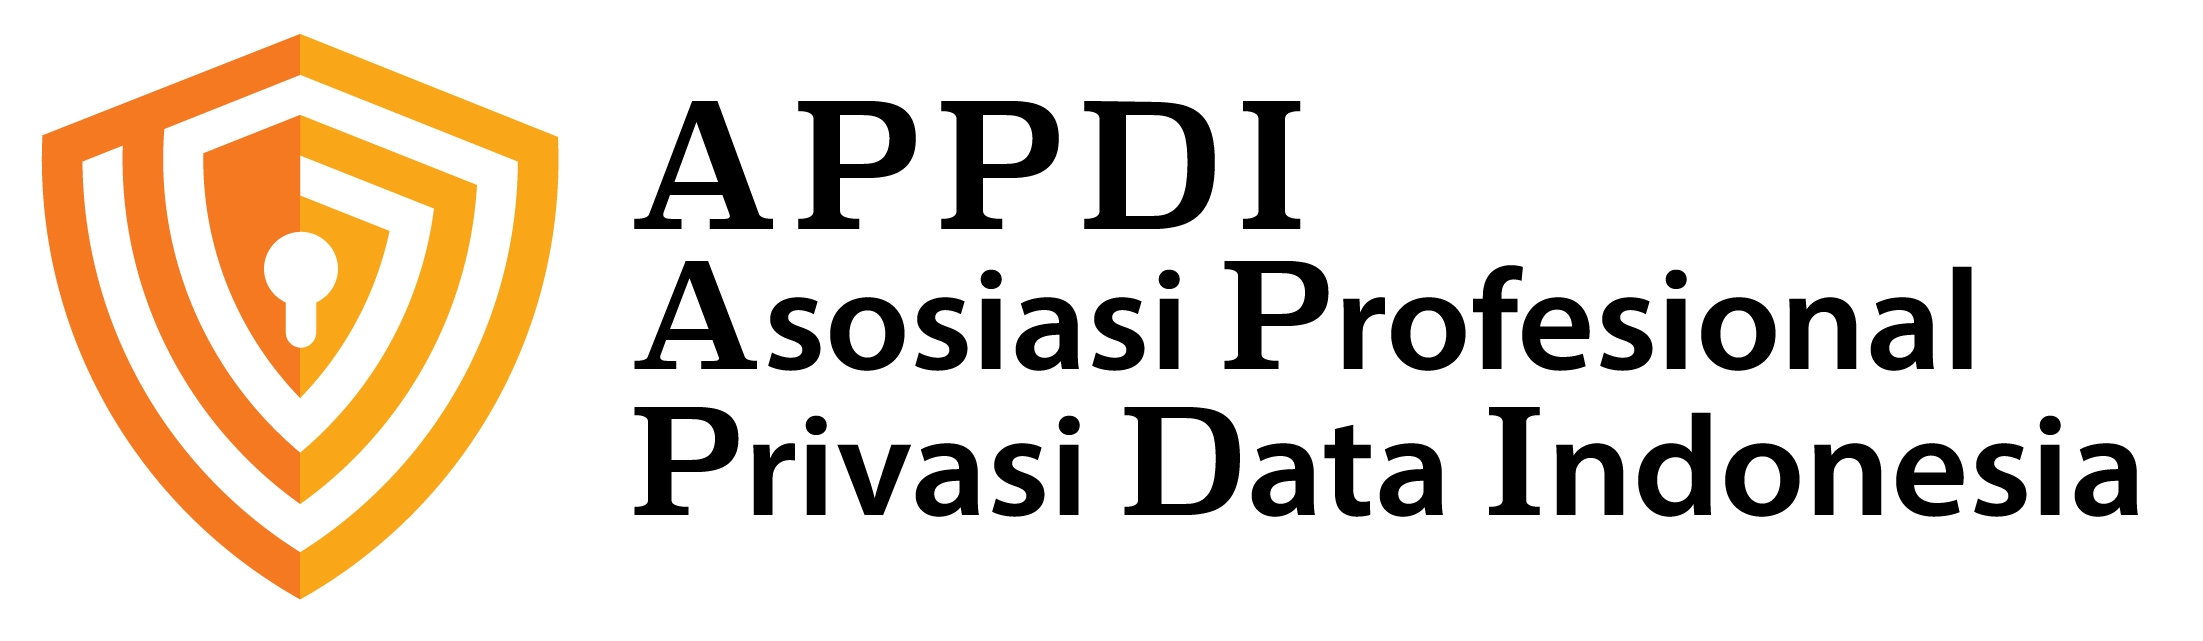 Logo APPDI_UPDATE_transparent background